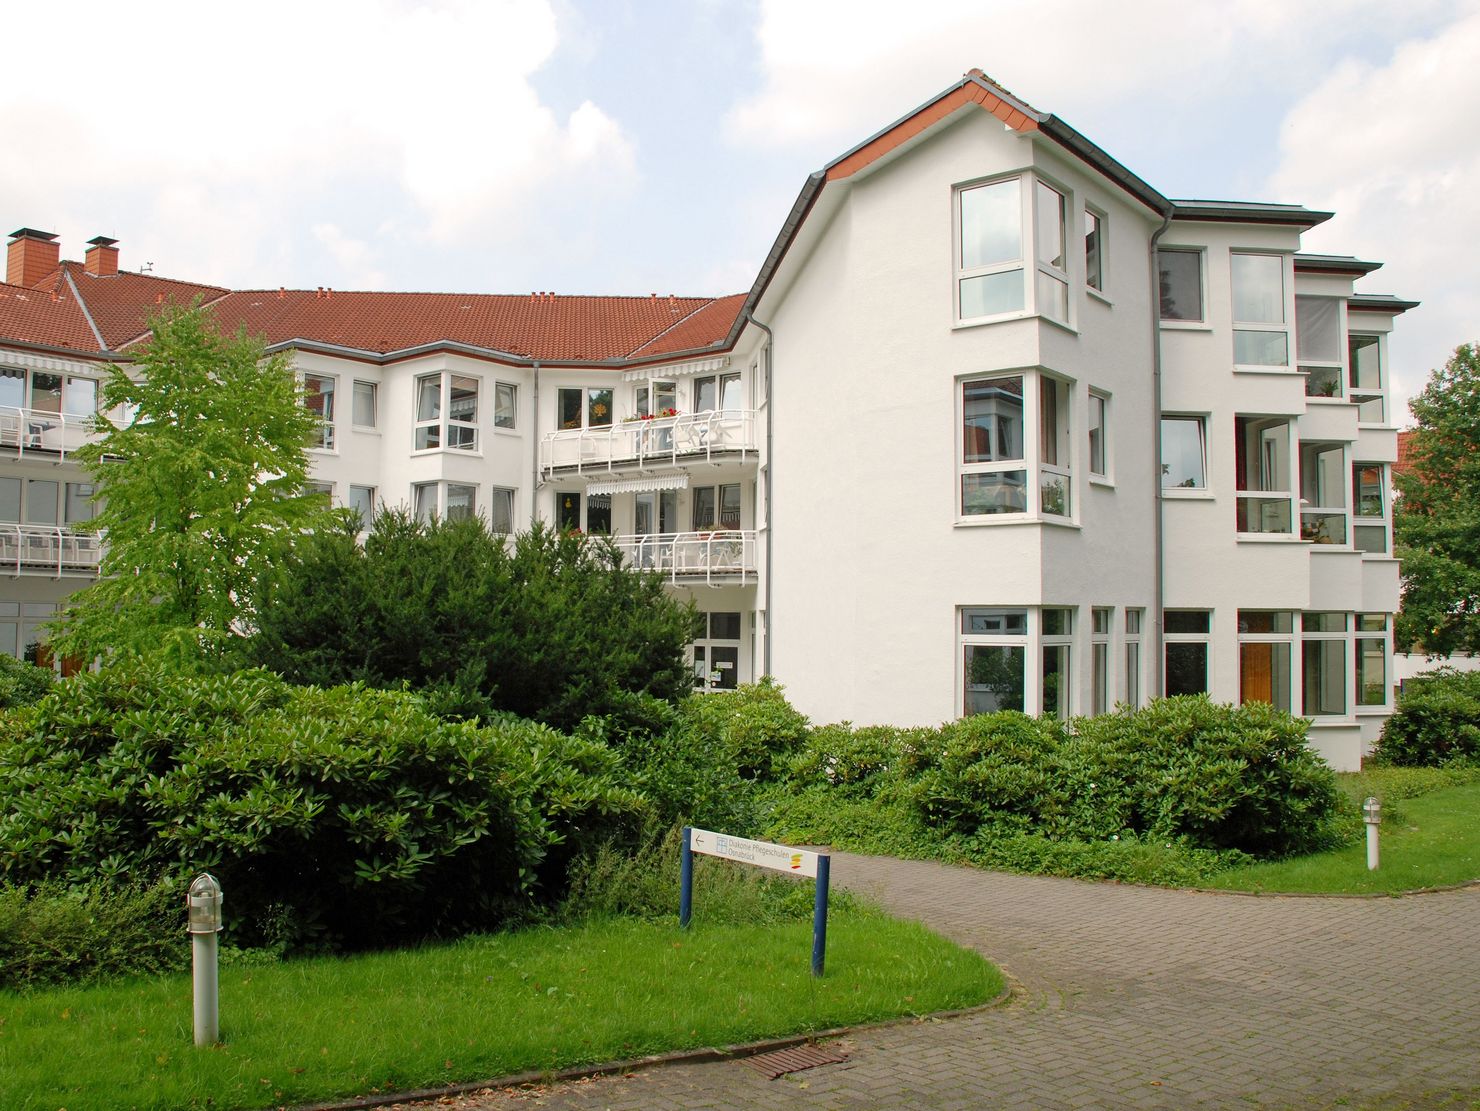 Blick vom Parkplatz auf das Gebäude der stationären Altenhilfe im Hermann-Bonnus-Haus